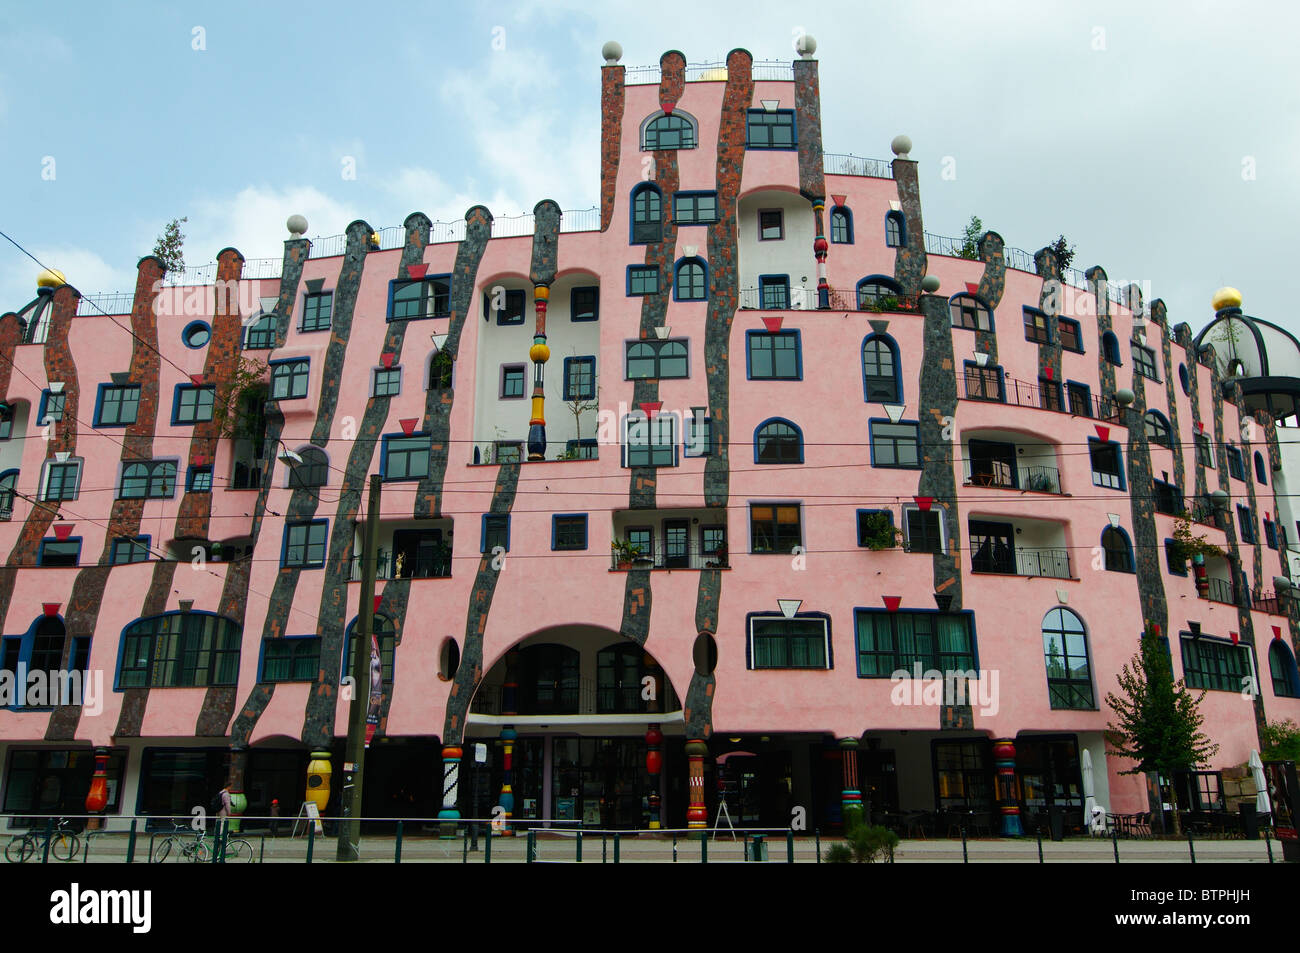 Alemania, en el Estado federado de Sajonia-Anhalt, Magdeburgo, Edificio Hundertwasser Foto de stock